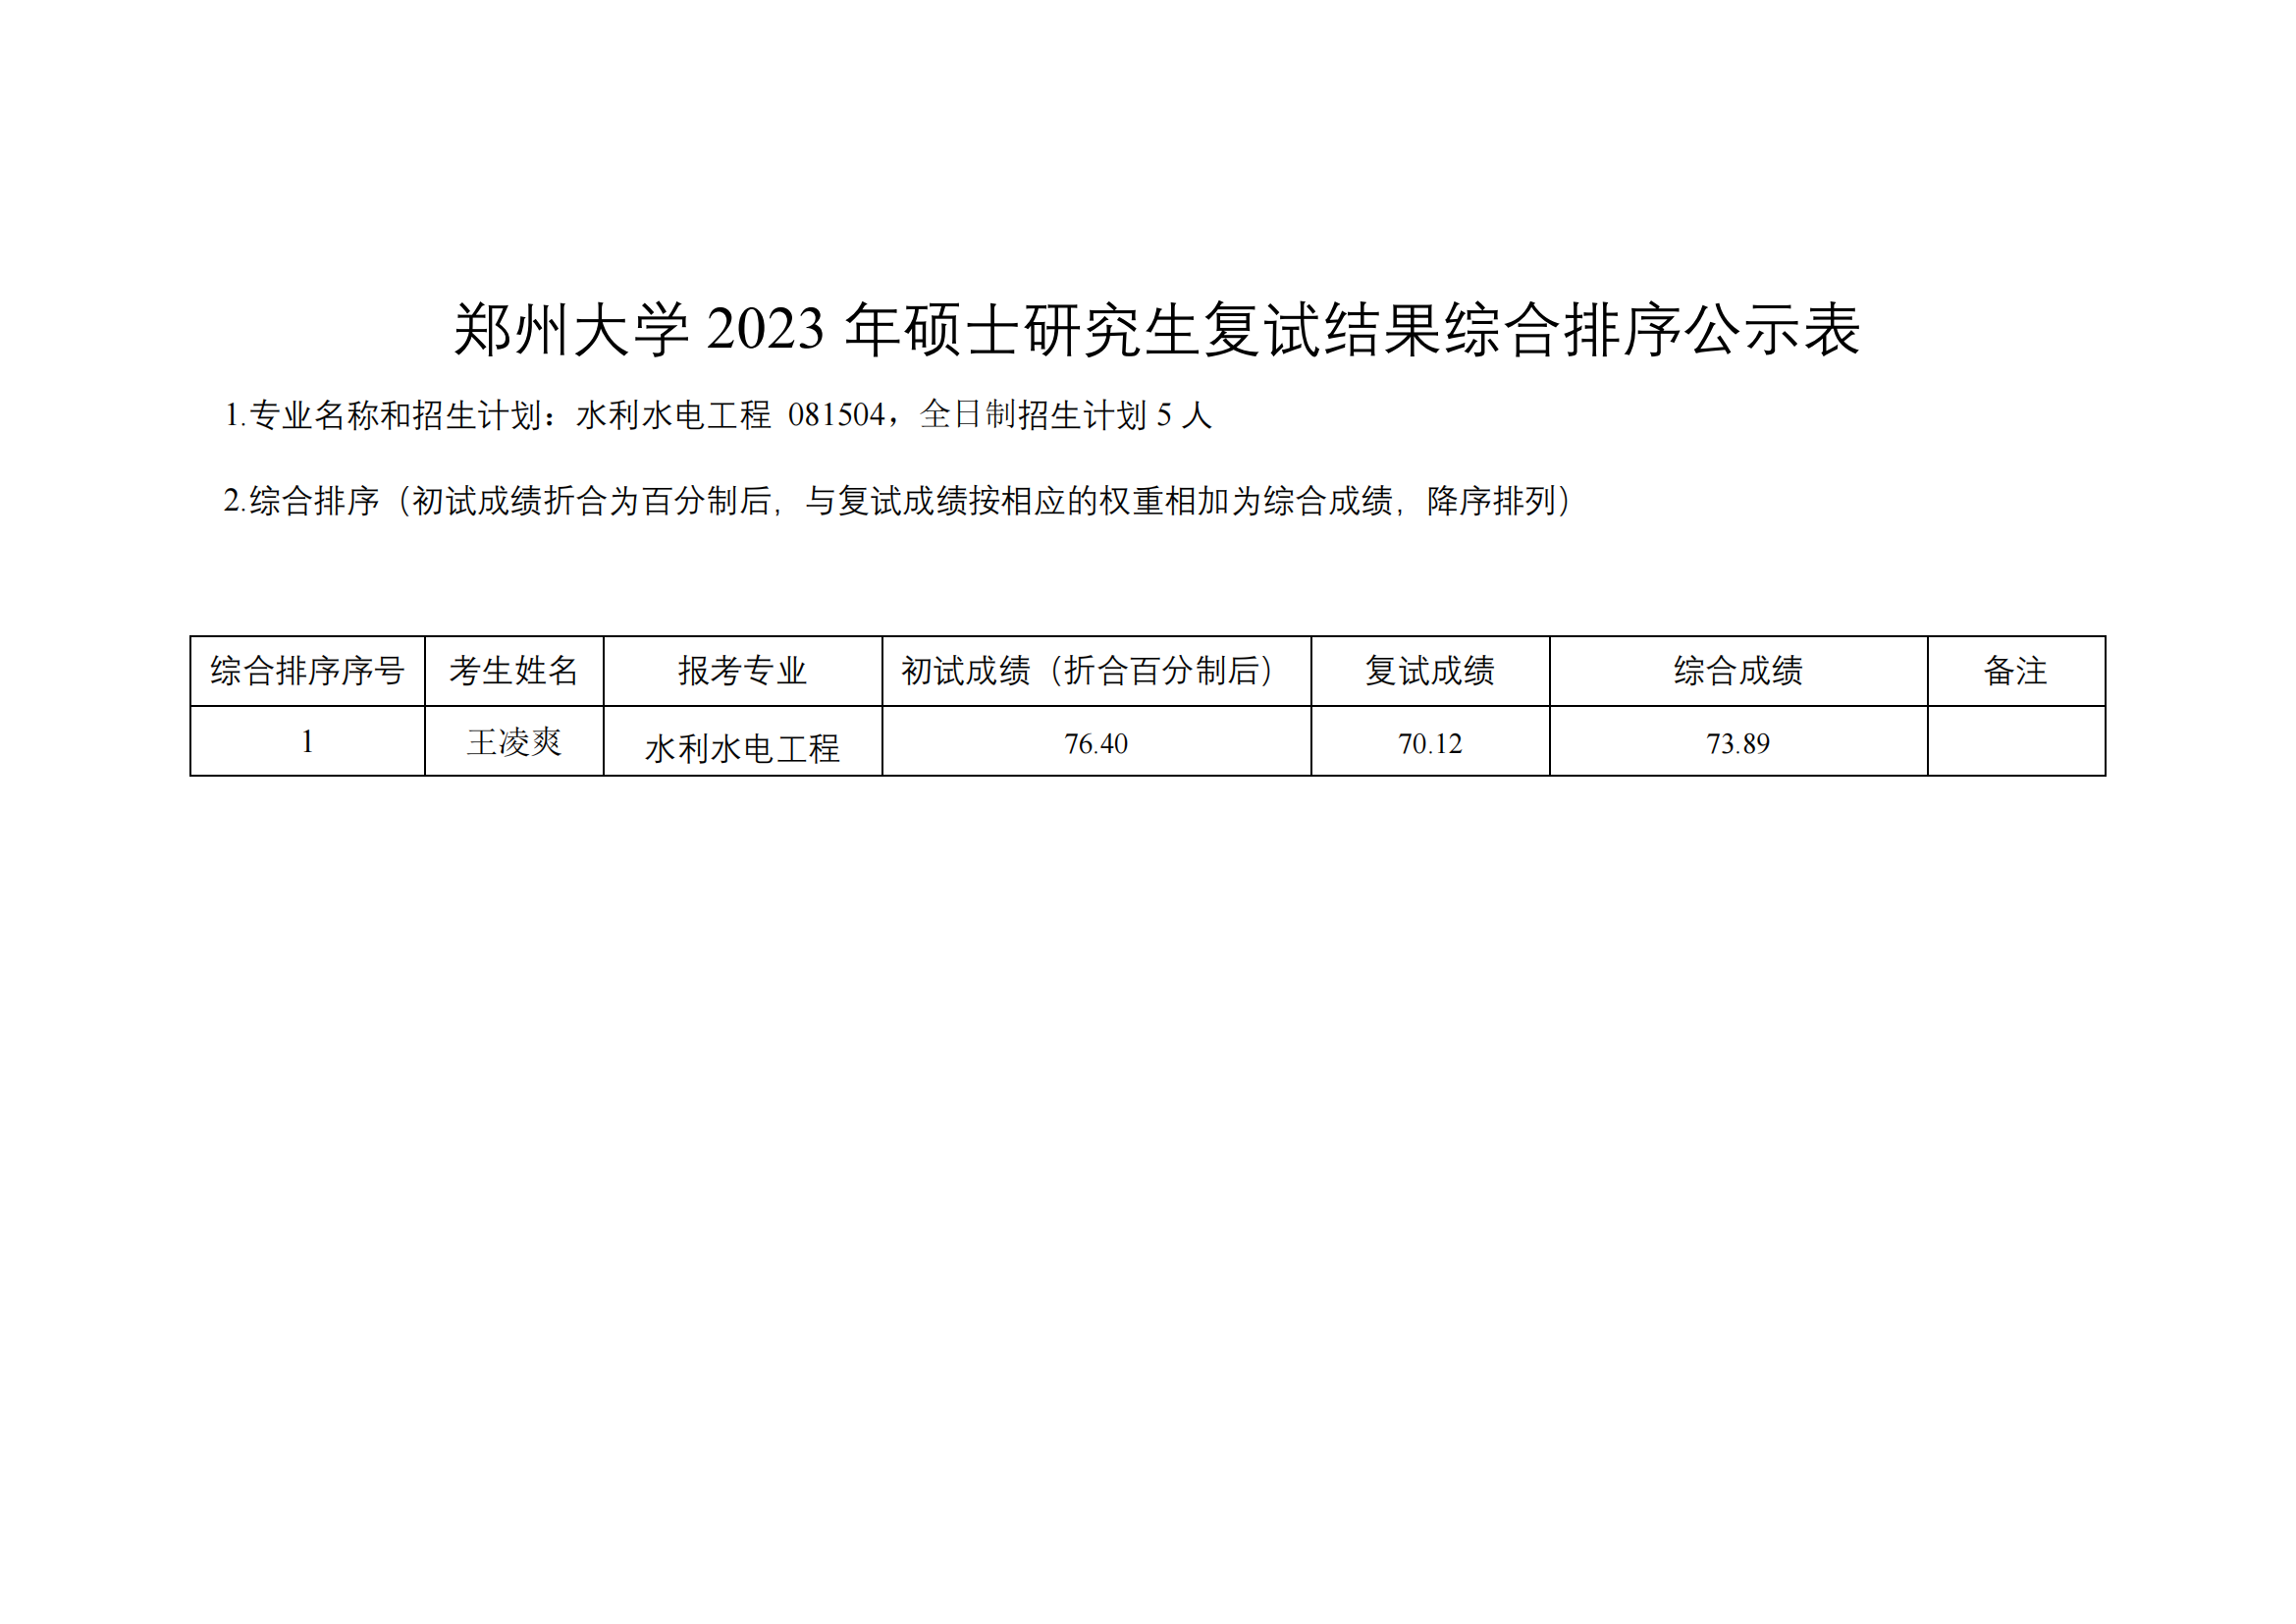 郑州大学水利与土木工程学院（原水利科学与工程学院专业方向）－2023年一志愿硕士研究生复试结果综合排序公示表-20230402(2)_04.png